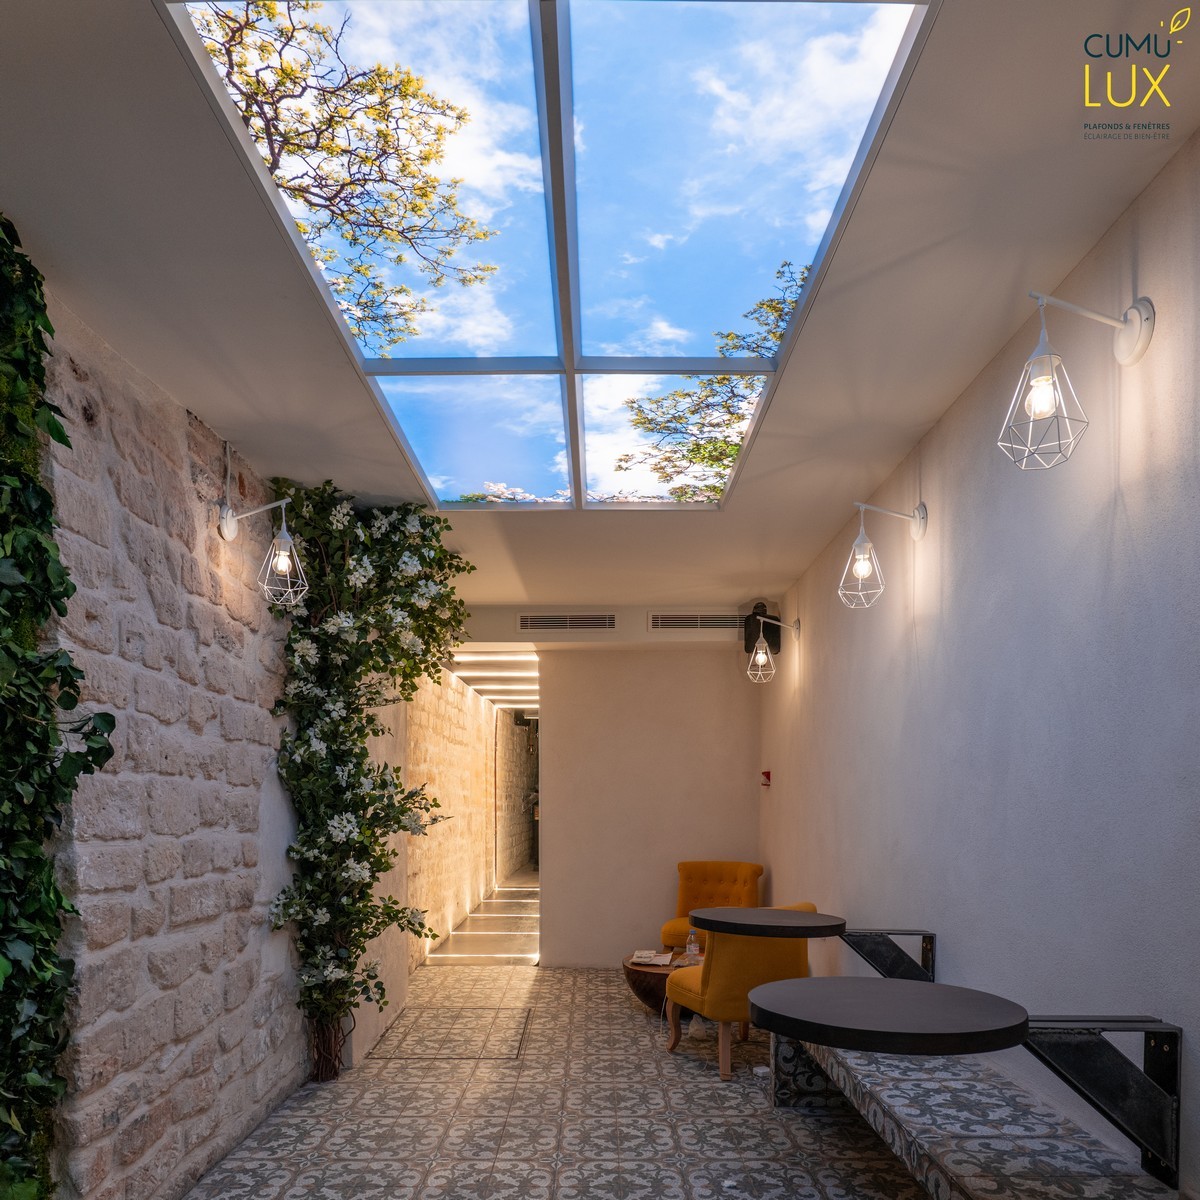 Faux plafond ciel Cumulux pour éclairer un restaurant manquant de lumière naturelle.